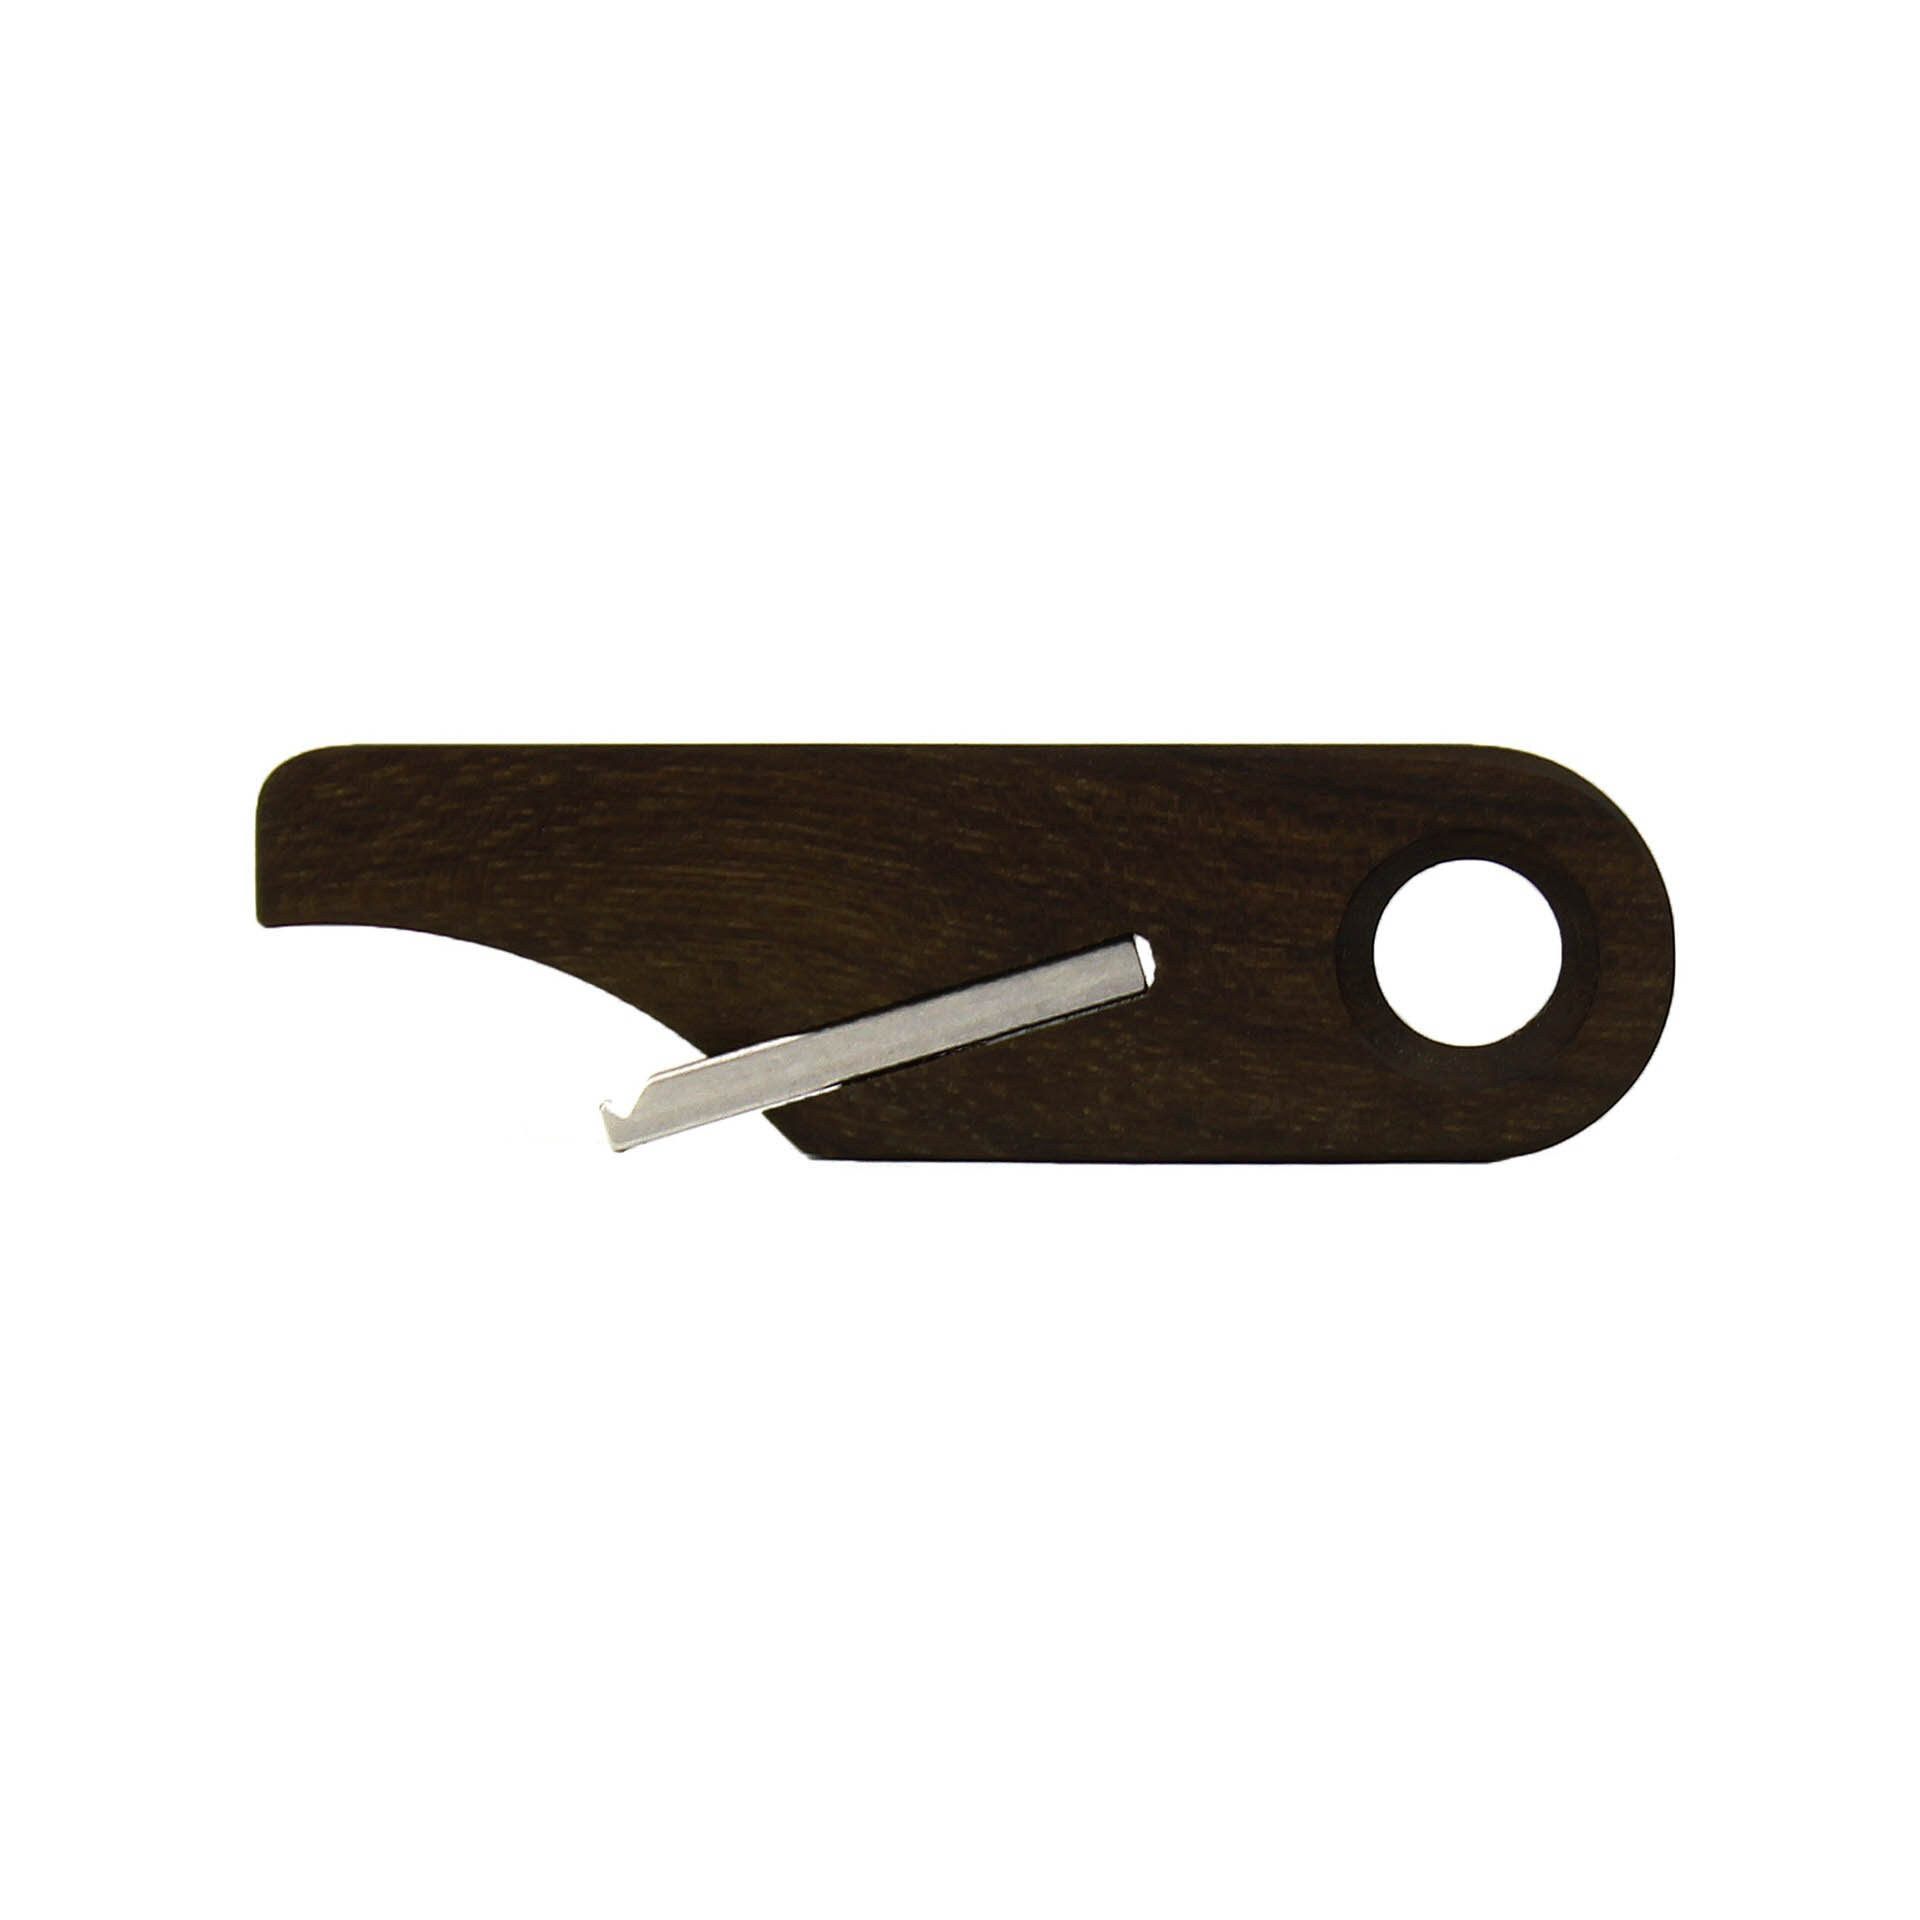 Wooden Bottle Opener Keychain by Rift Wood Company - Lignum Vitae.jpg